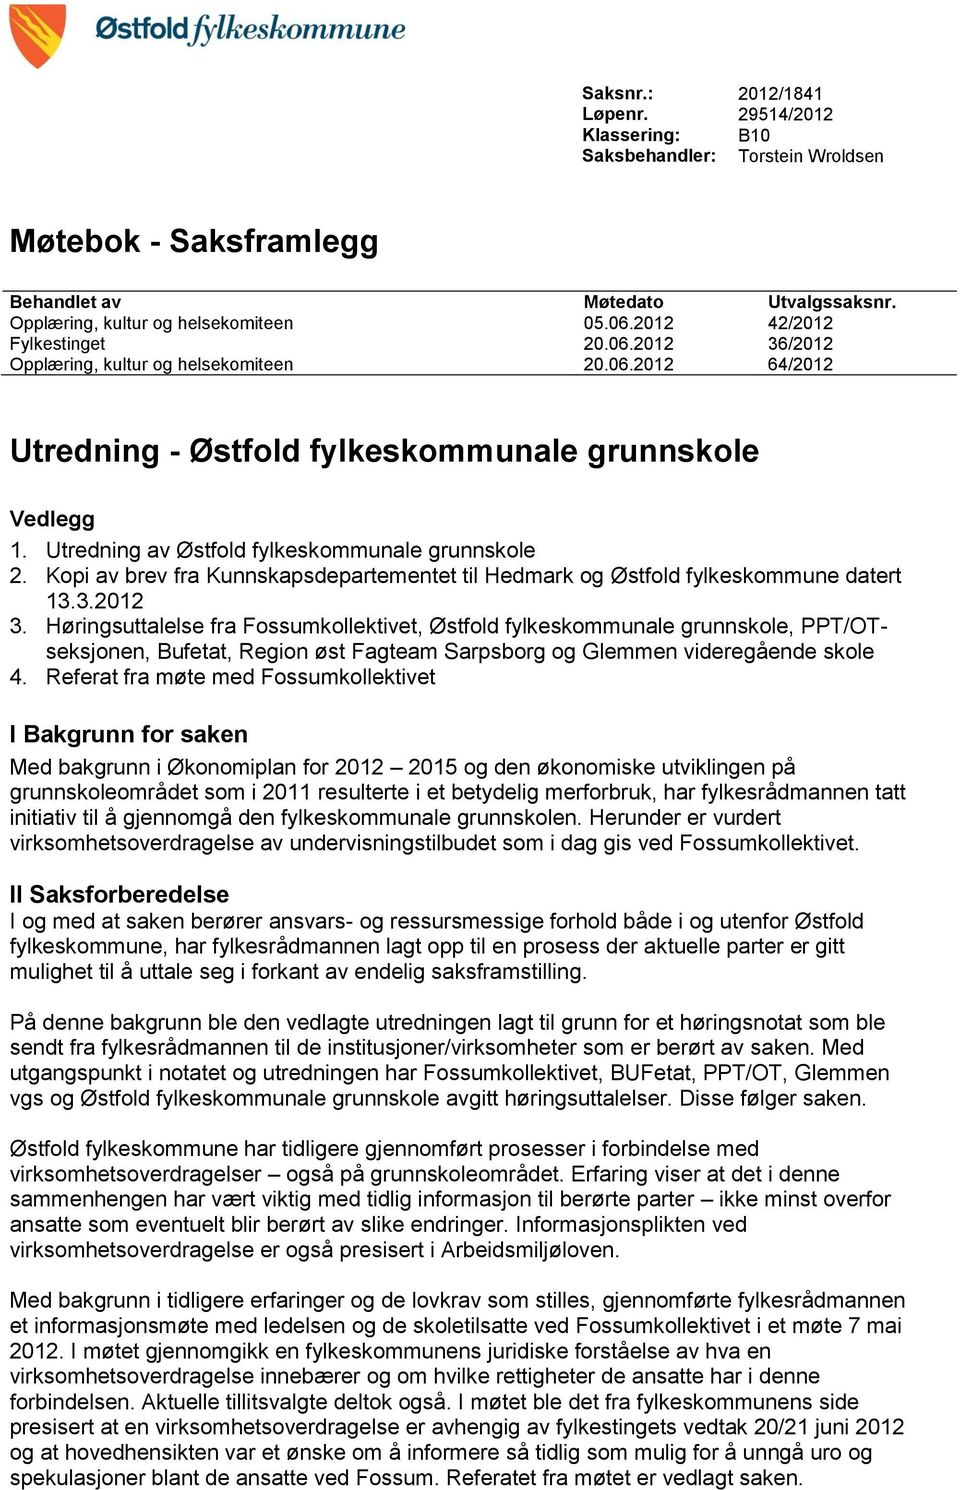 Utredning av Østfold fylkeskommunale grunnskole 2. Kopi av brev fra Kunnskapsdepartementet til Hedmark og Østfold fylkeskommune datert 13.3.2012 3.